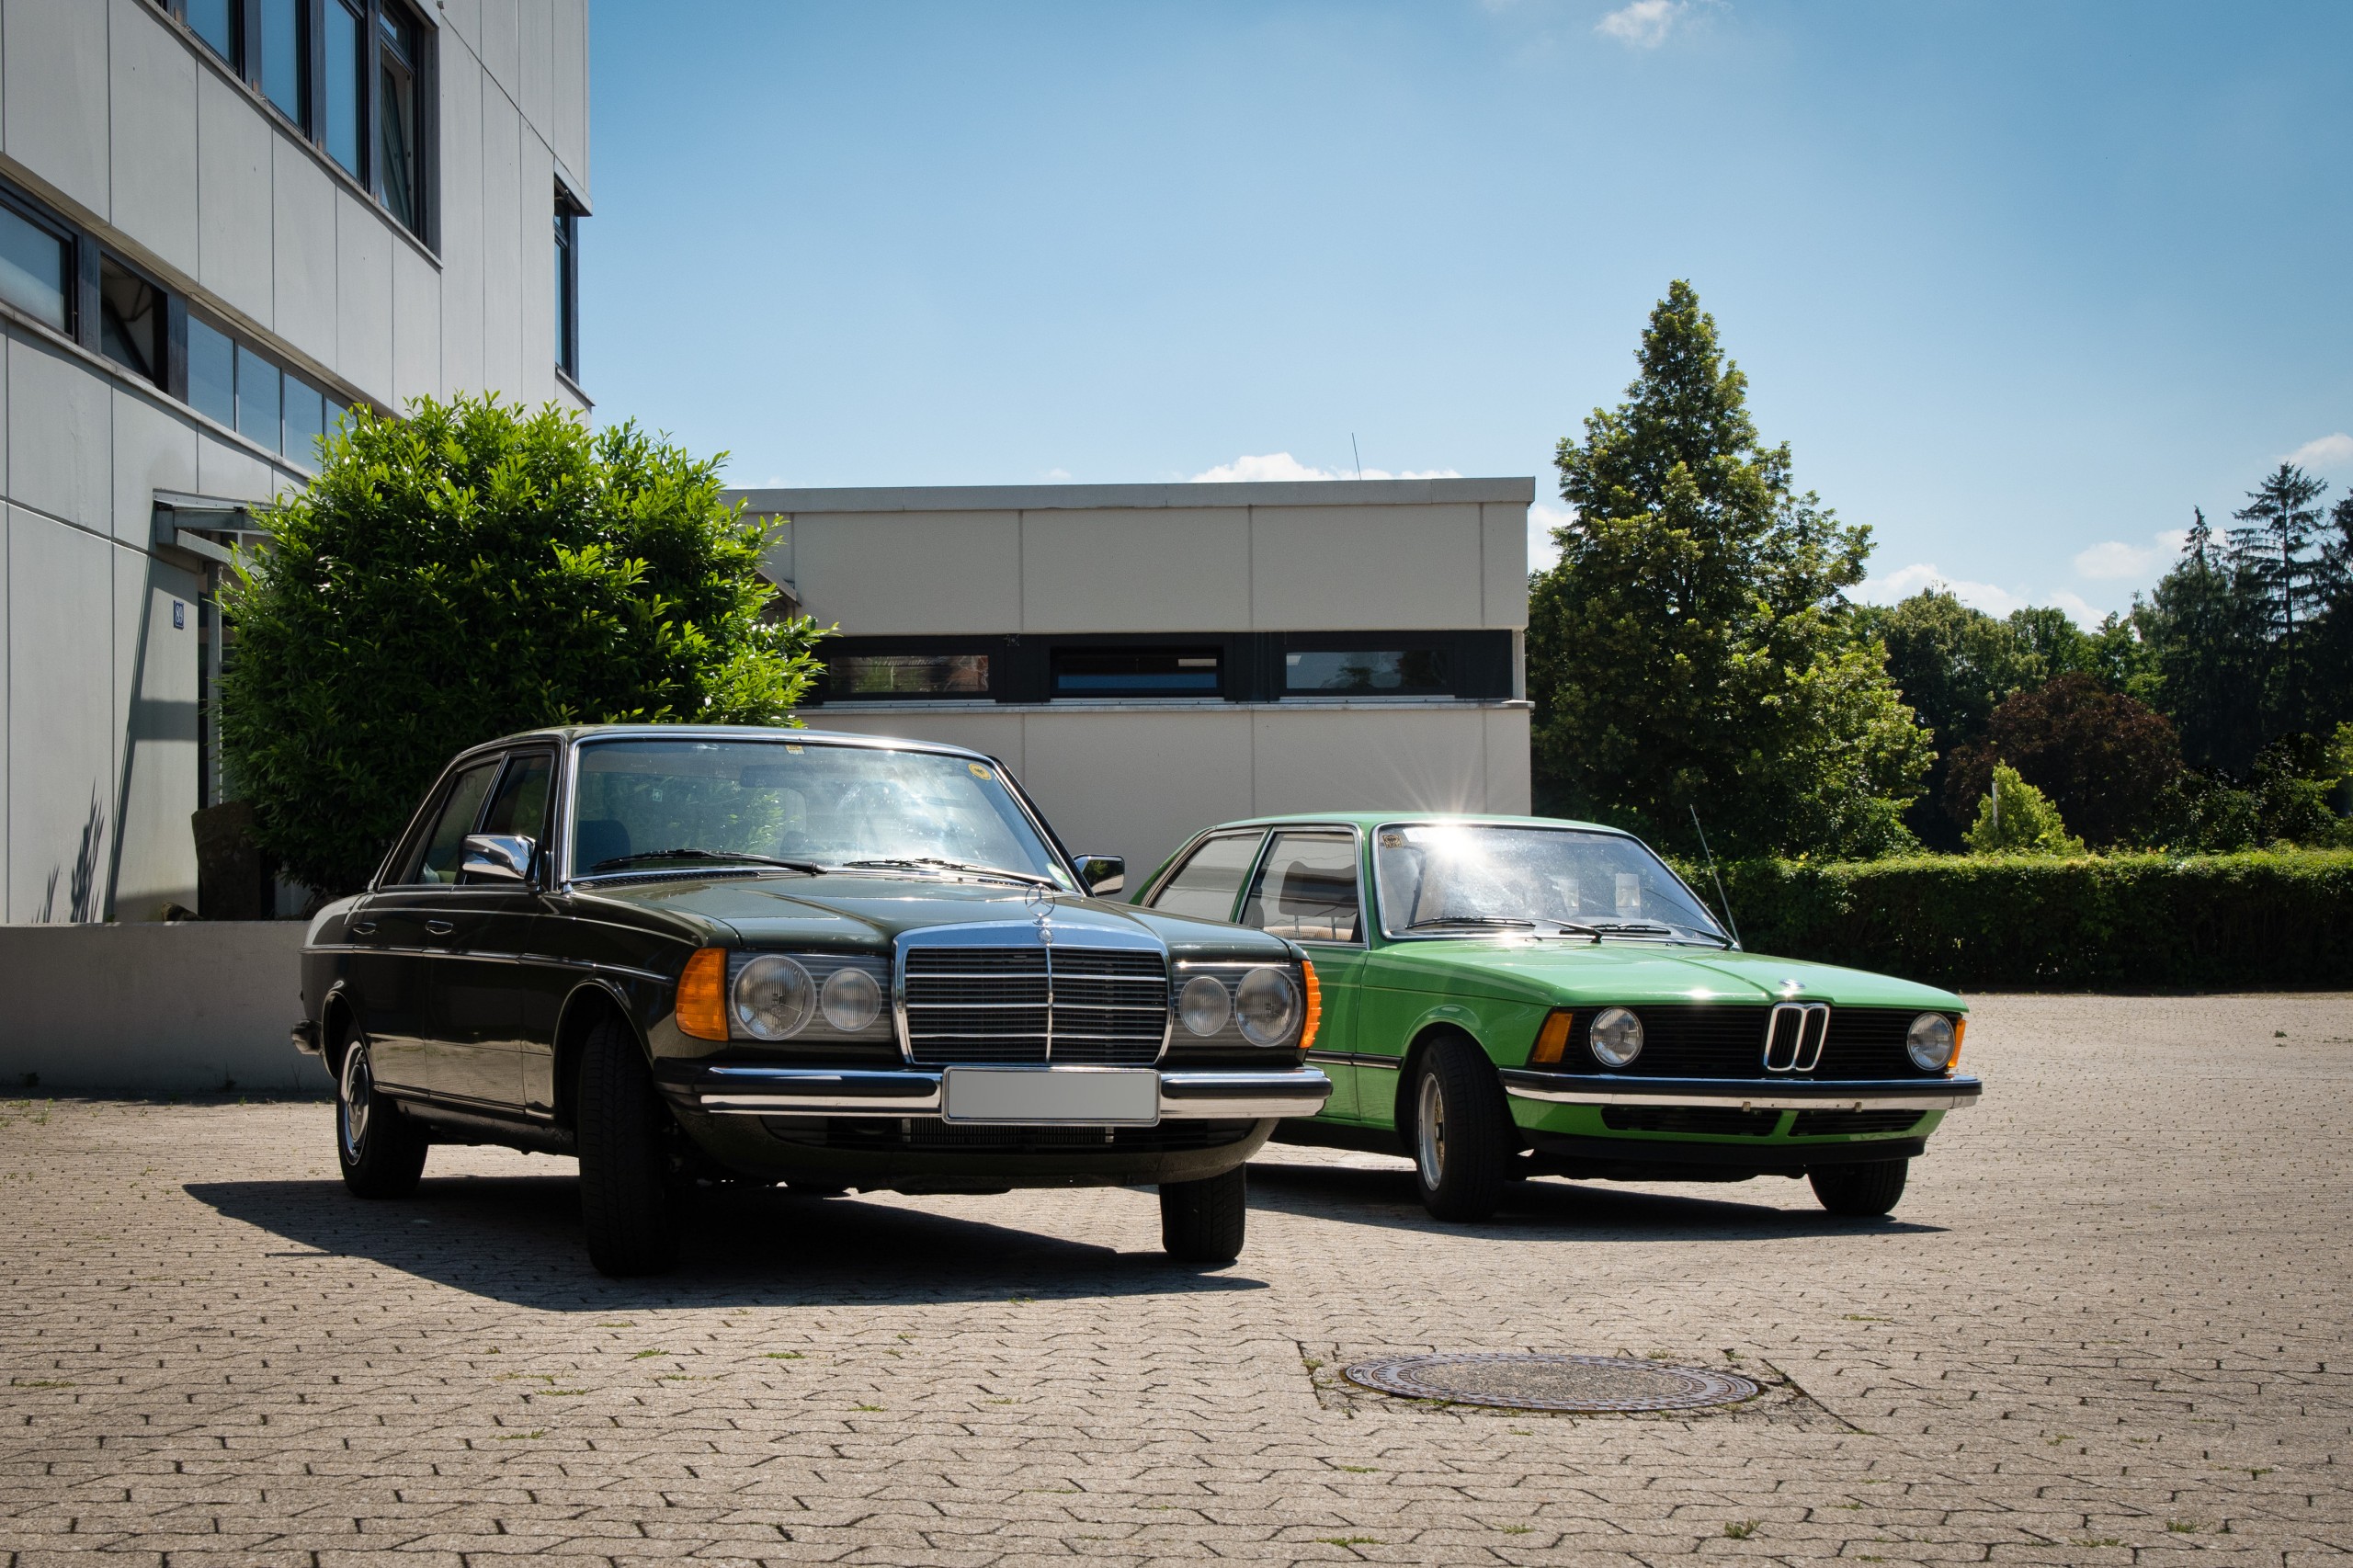 Classic Cars @ AZT Fortsetzung - Themen - Allianz Zentrum für Technik